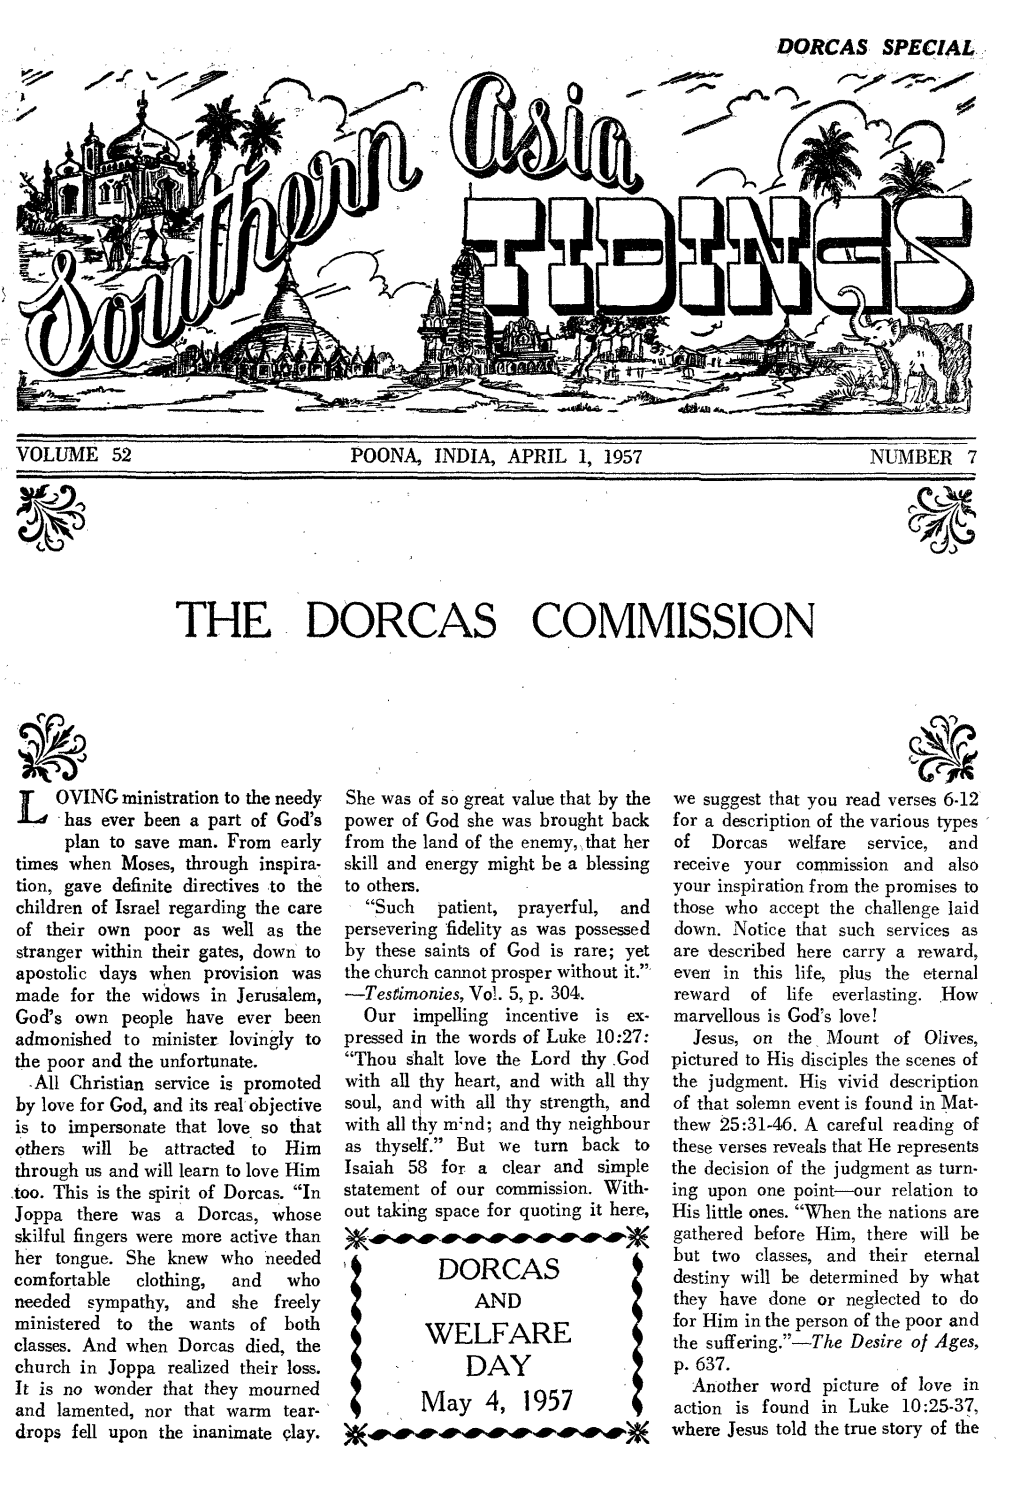 The Dorcas Commission